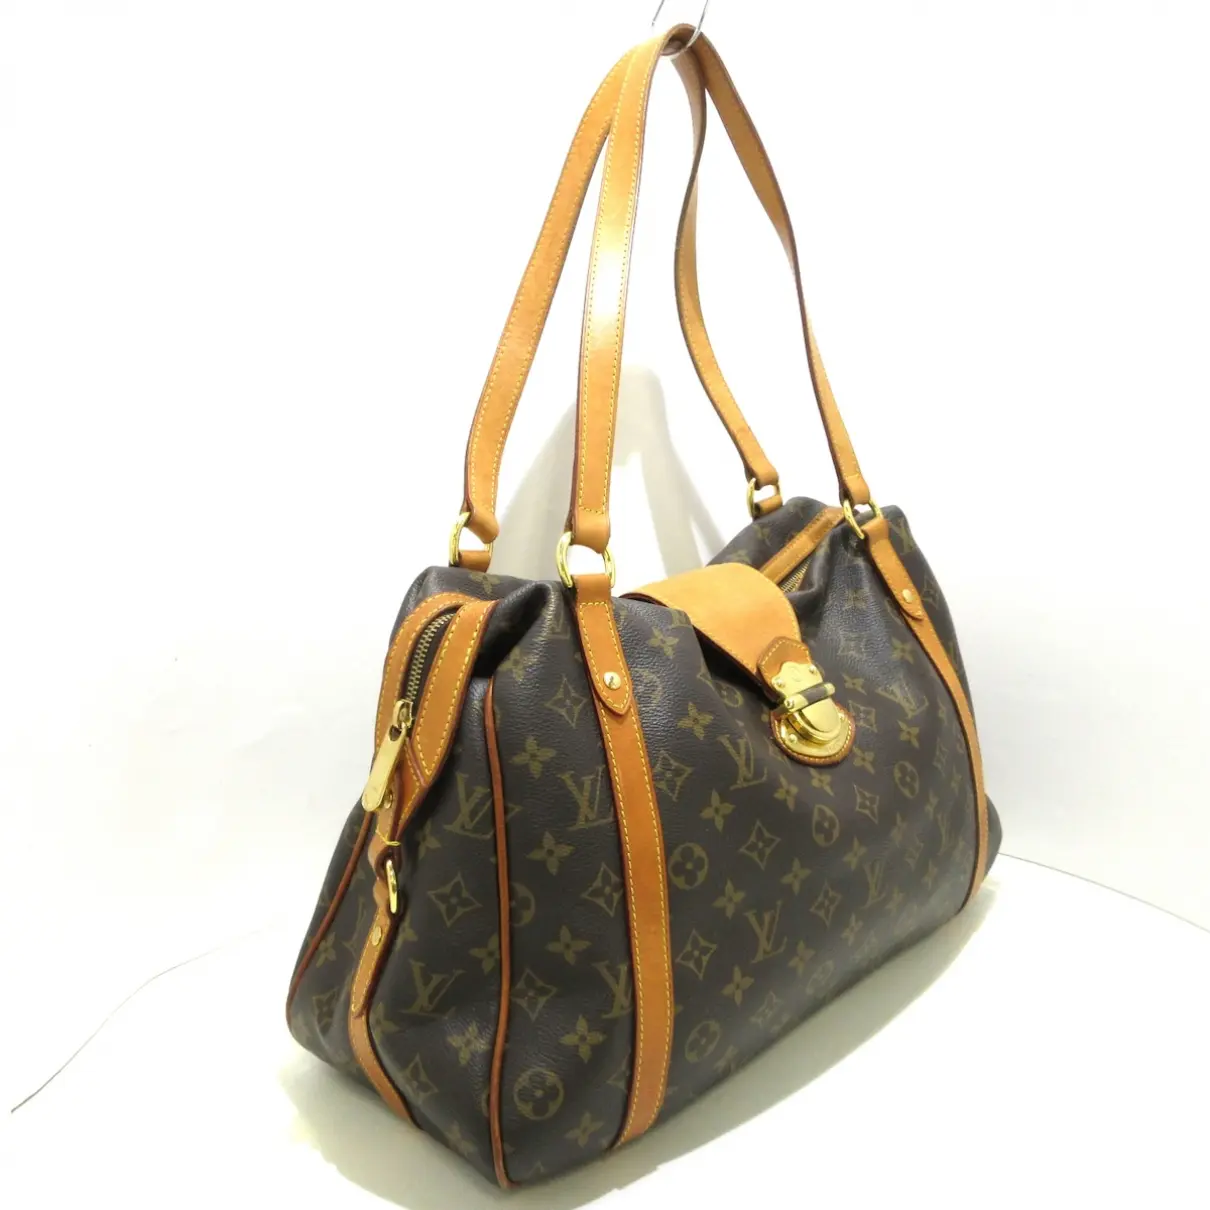 Buy Louis Vuitton Stresa cloth handbag online - Vintage